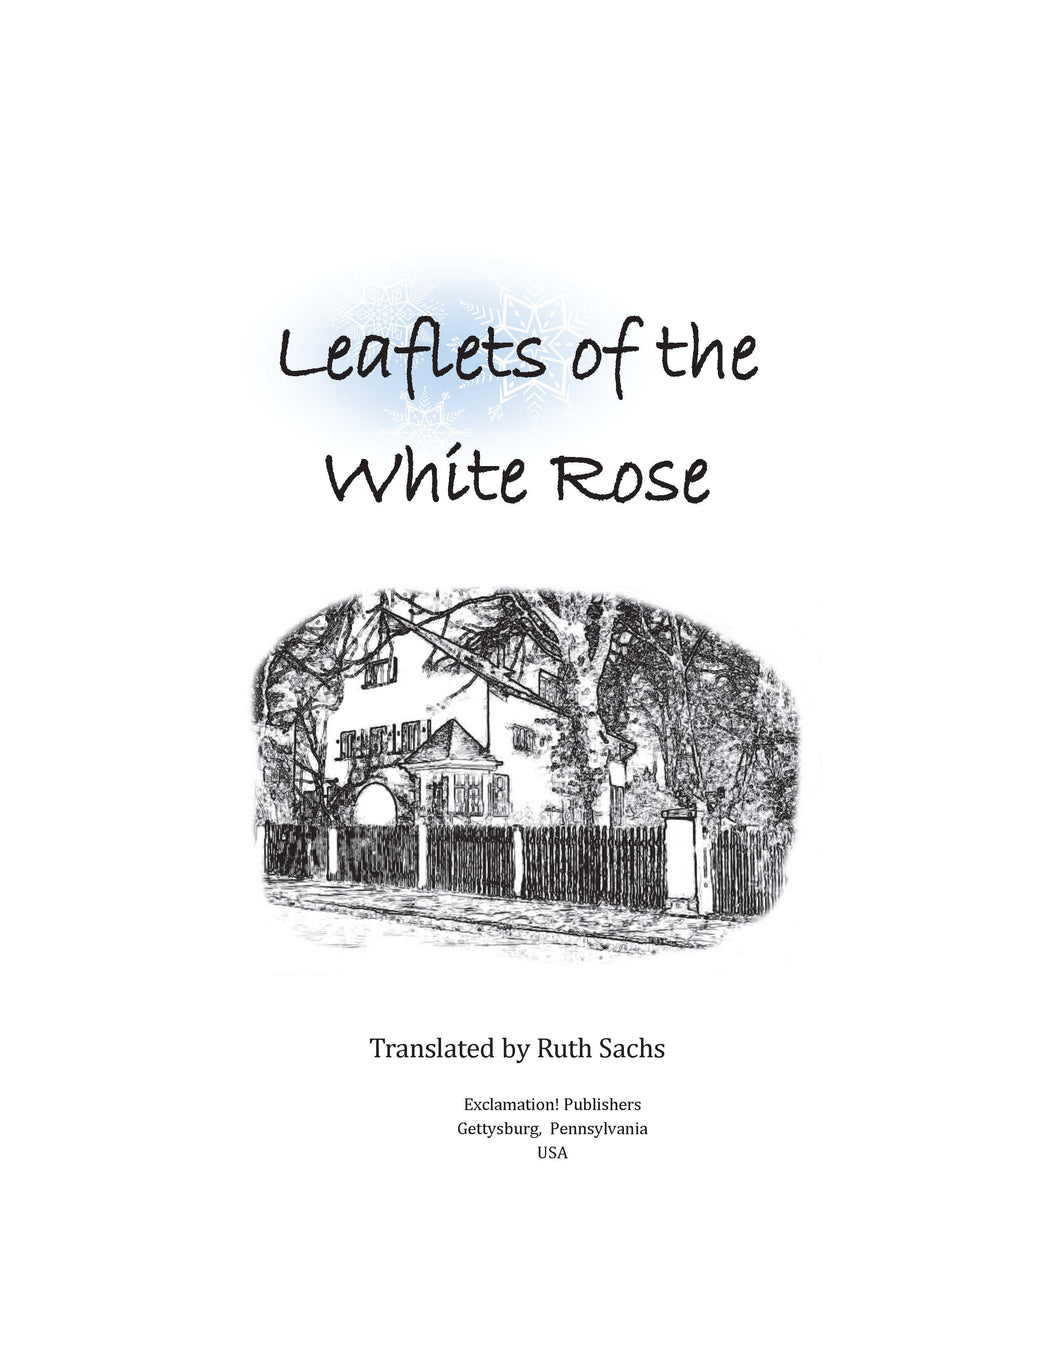 White Rose Leaflets